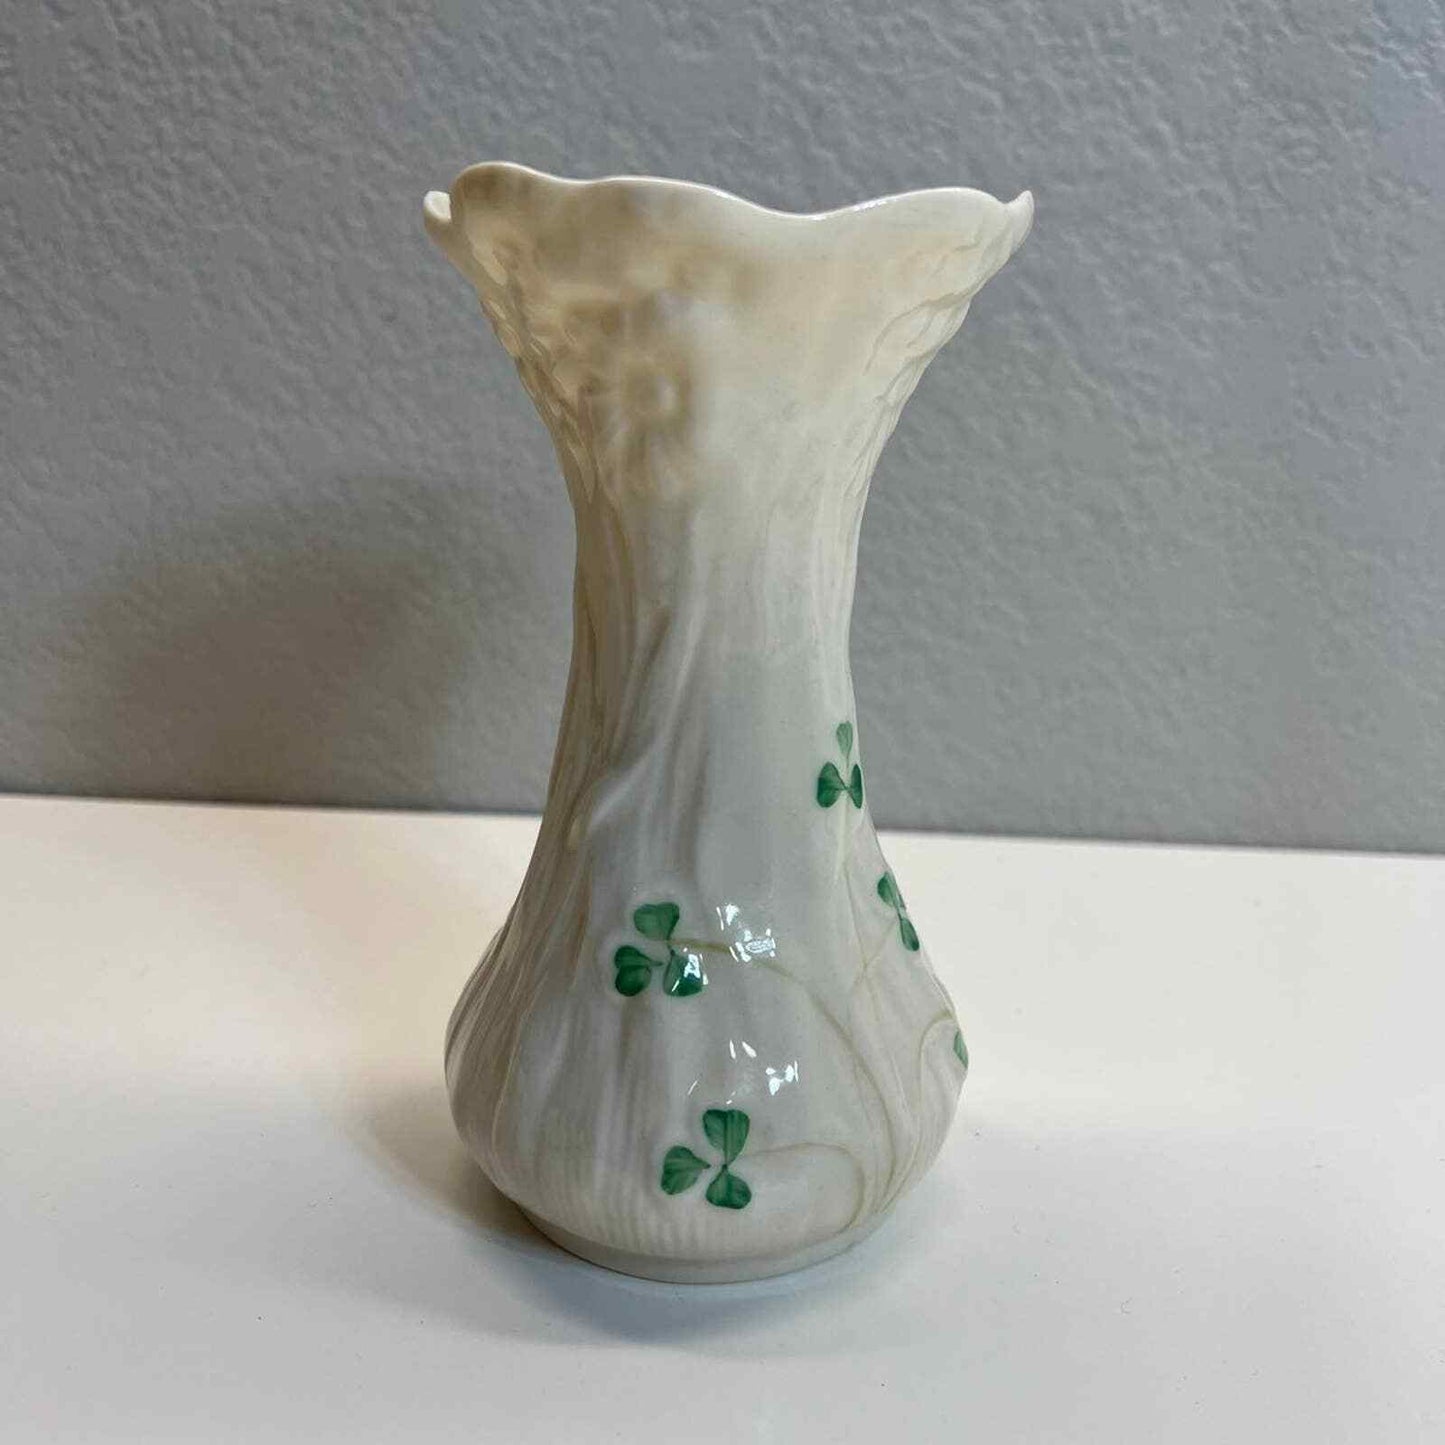 Belleek Vase Shamrocks Flower Ireland Pottery Daisy Spill Porcelain Home Decor